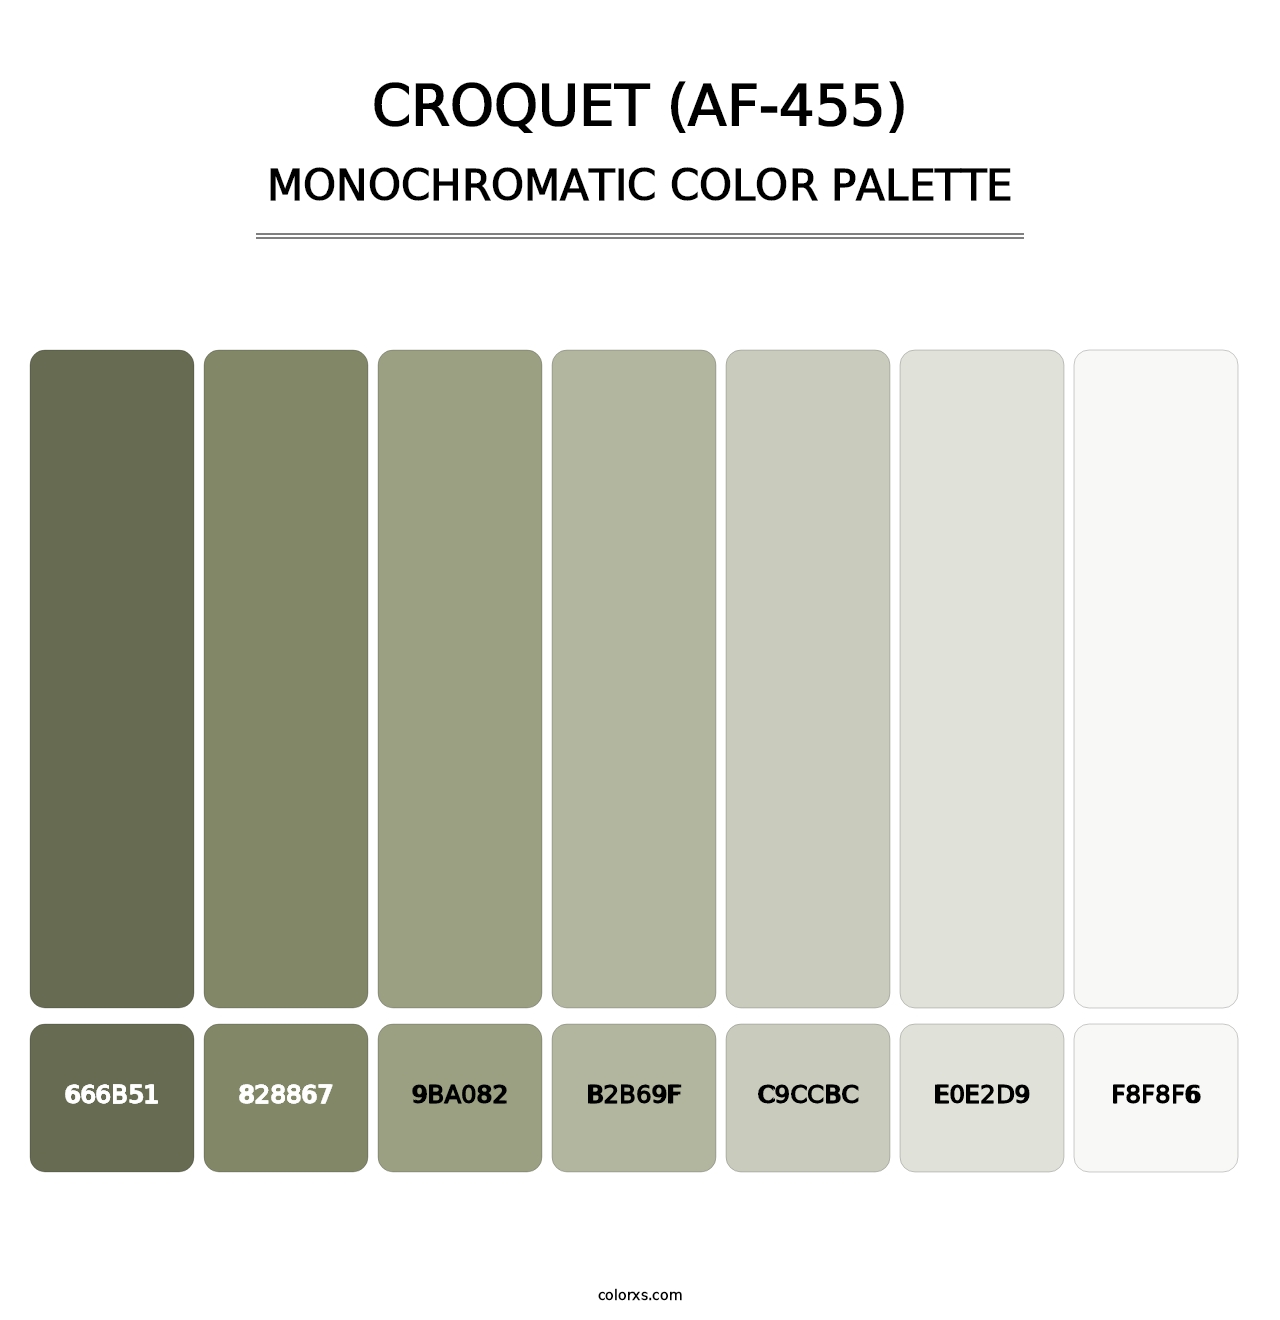 Croquet (AF-455) - Monochromatic Color Palette